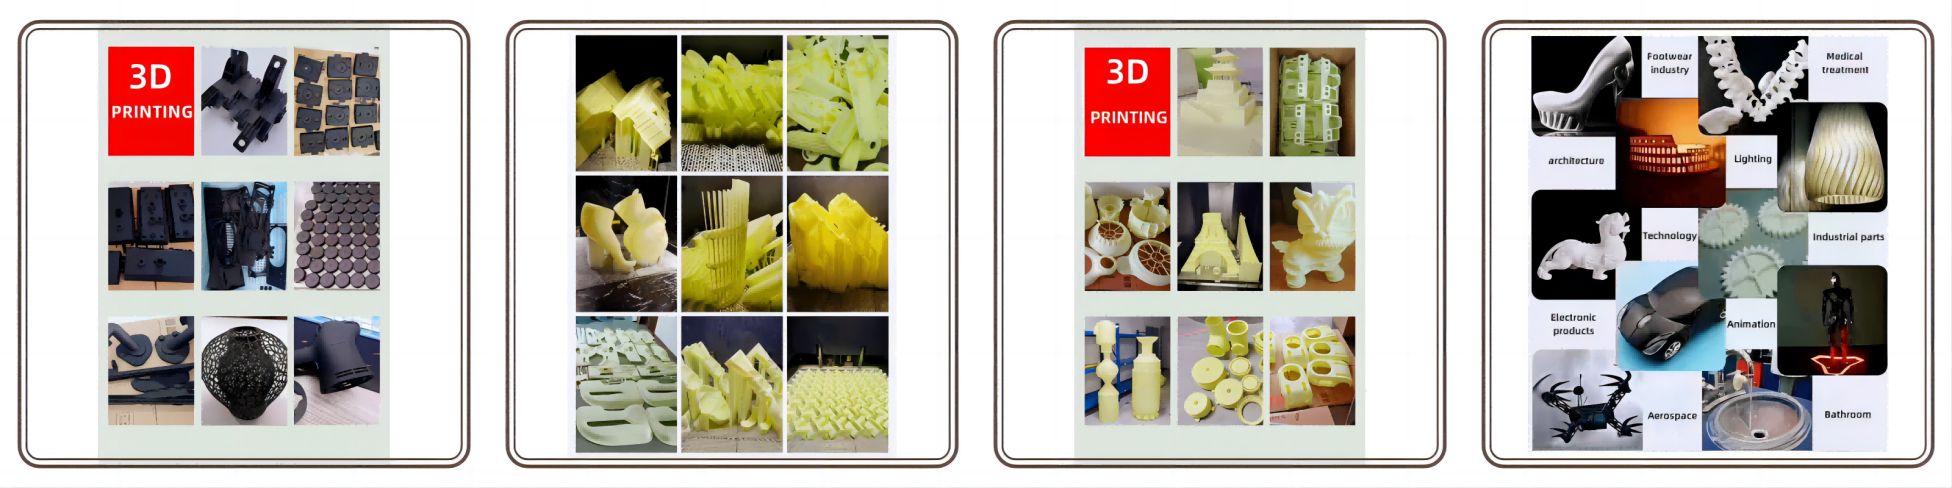 3Dprinting 04